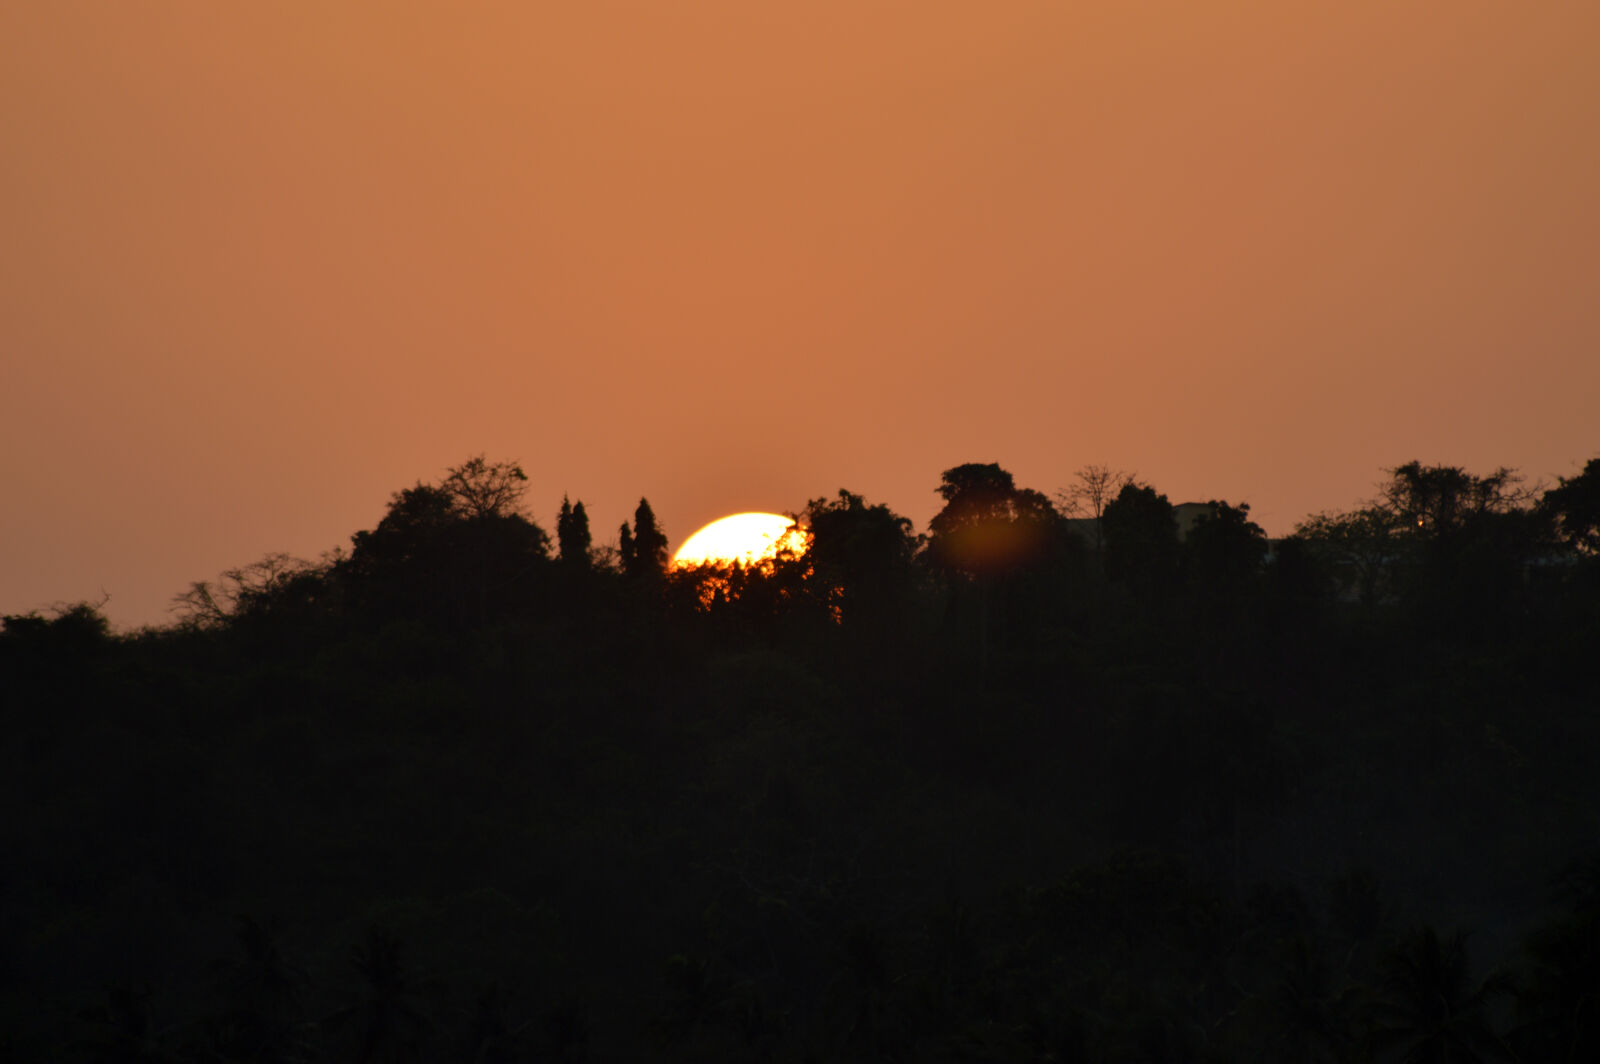 Nikon D3200 sample photo. Sunset photography